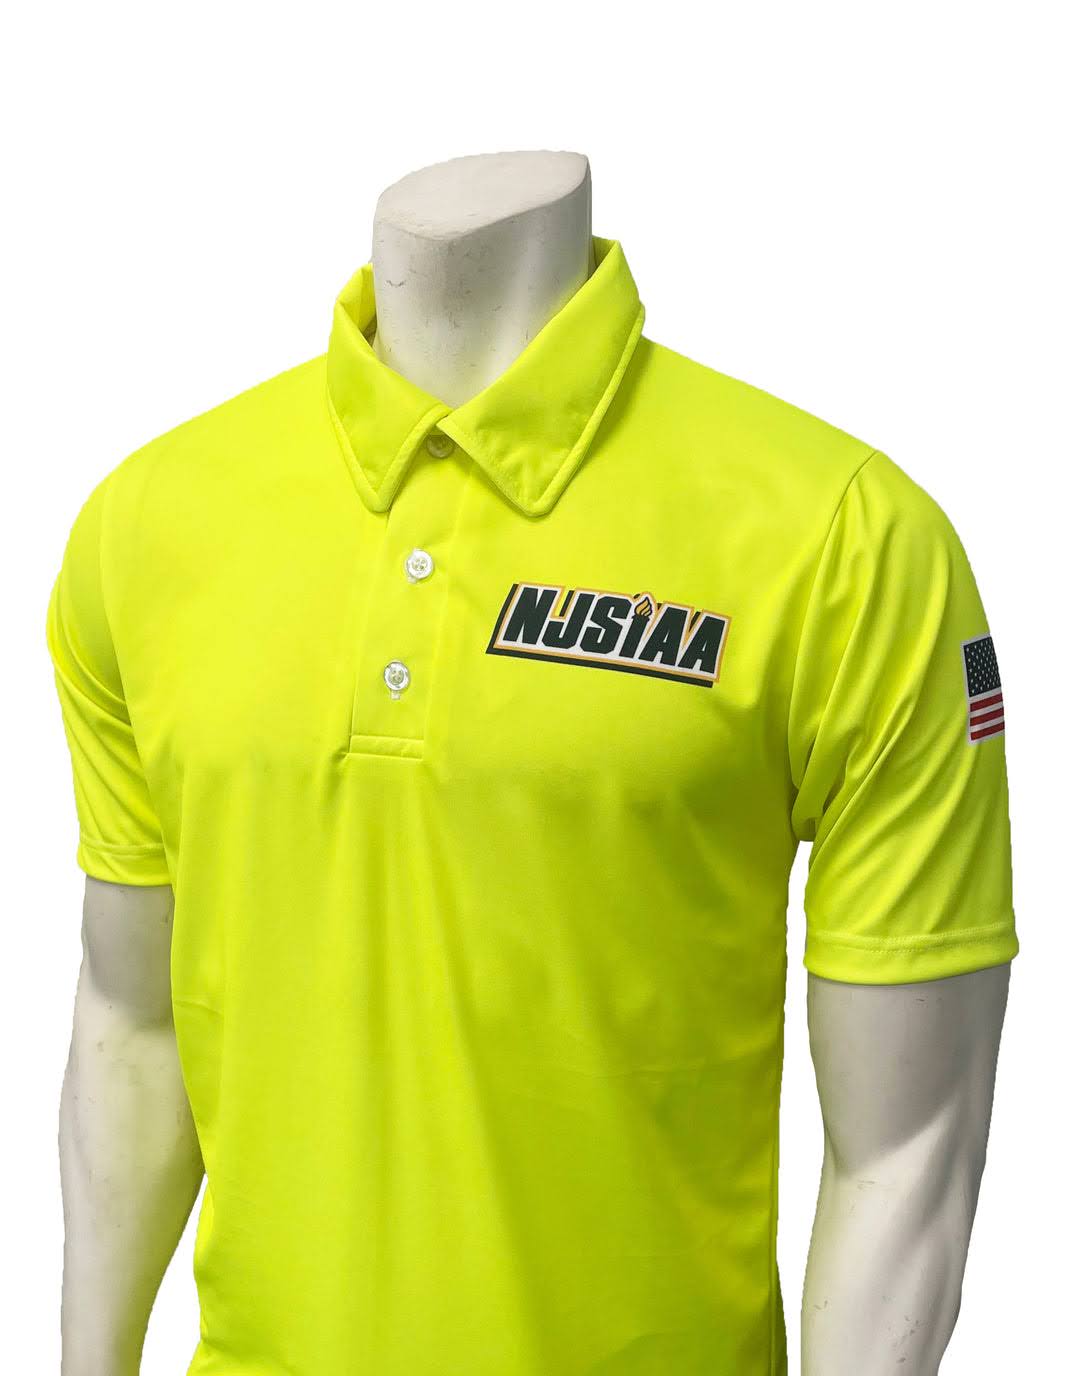 USA600NJ-FY - Smitty NJSIAA Men's Field Hockey Short Sleeve Shirt